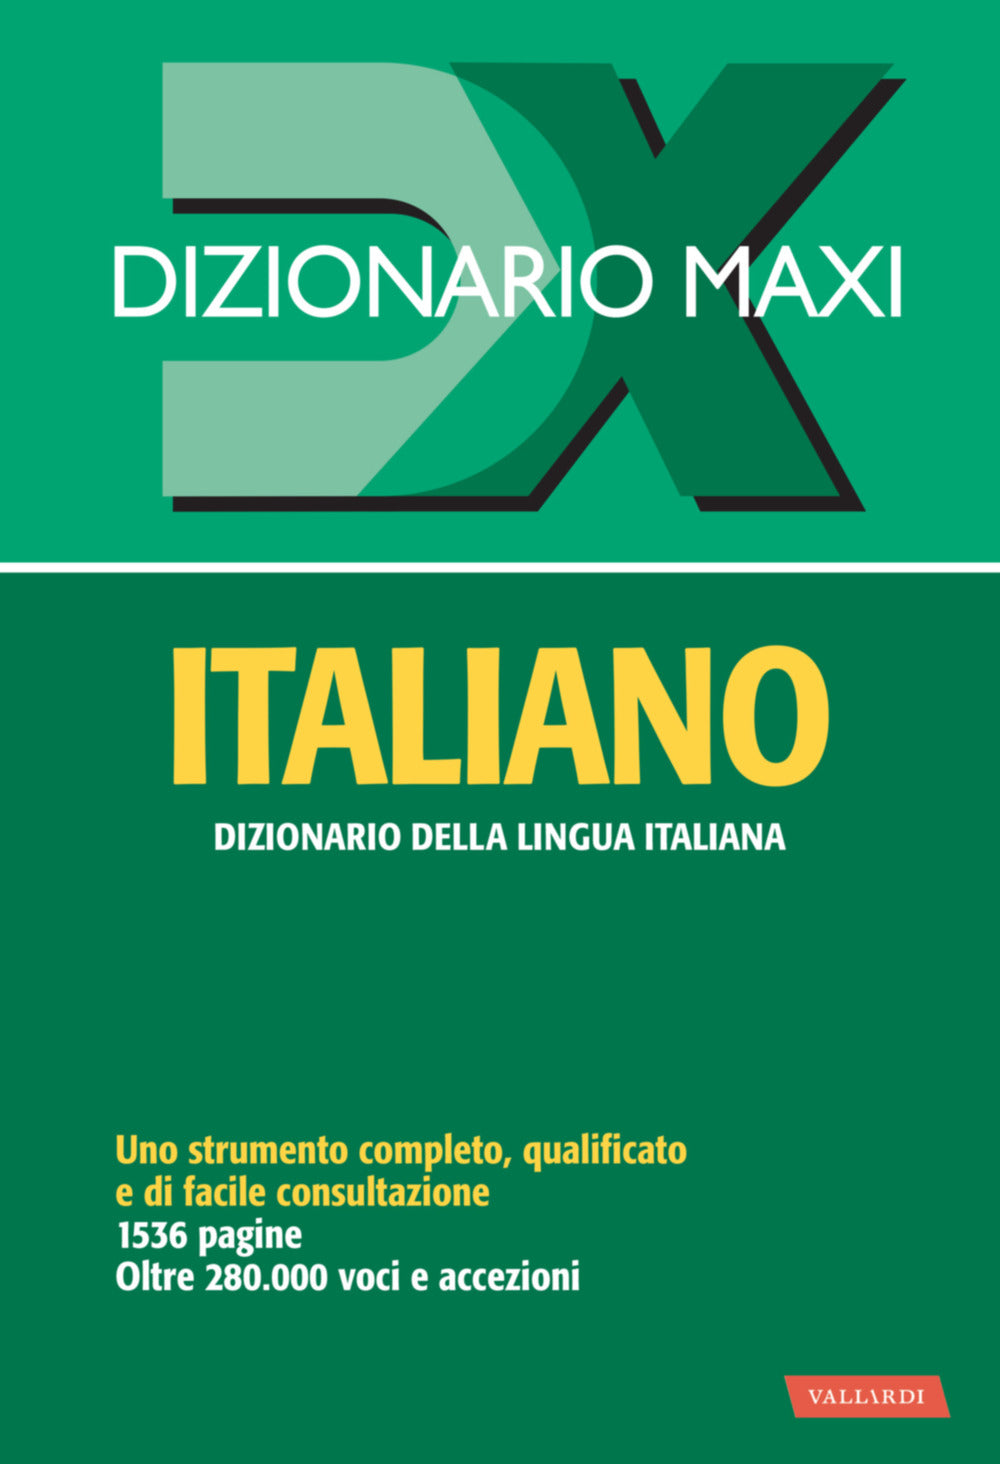 Dizionario maxi. Italiano.